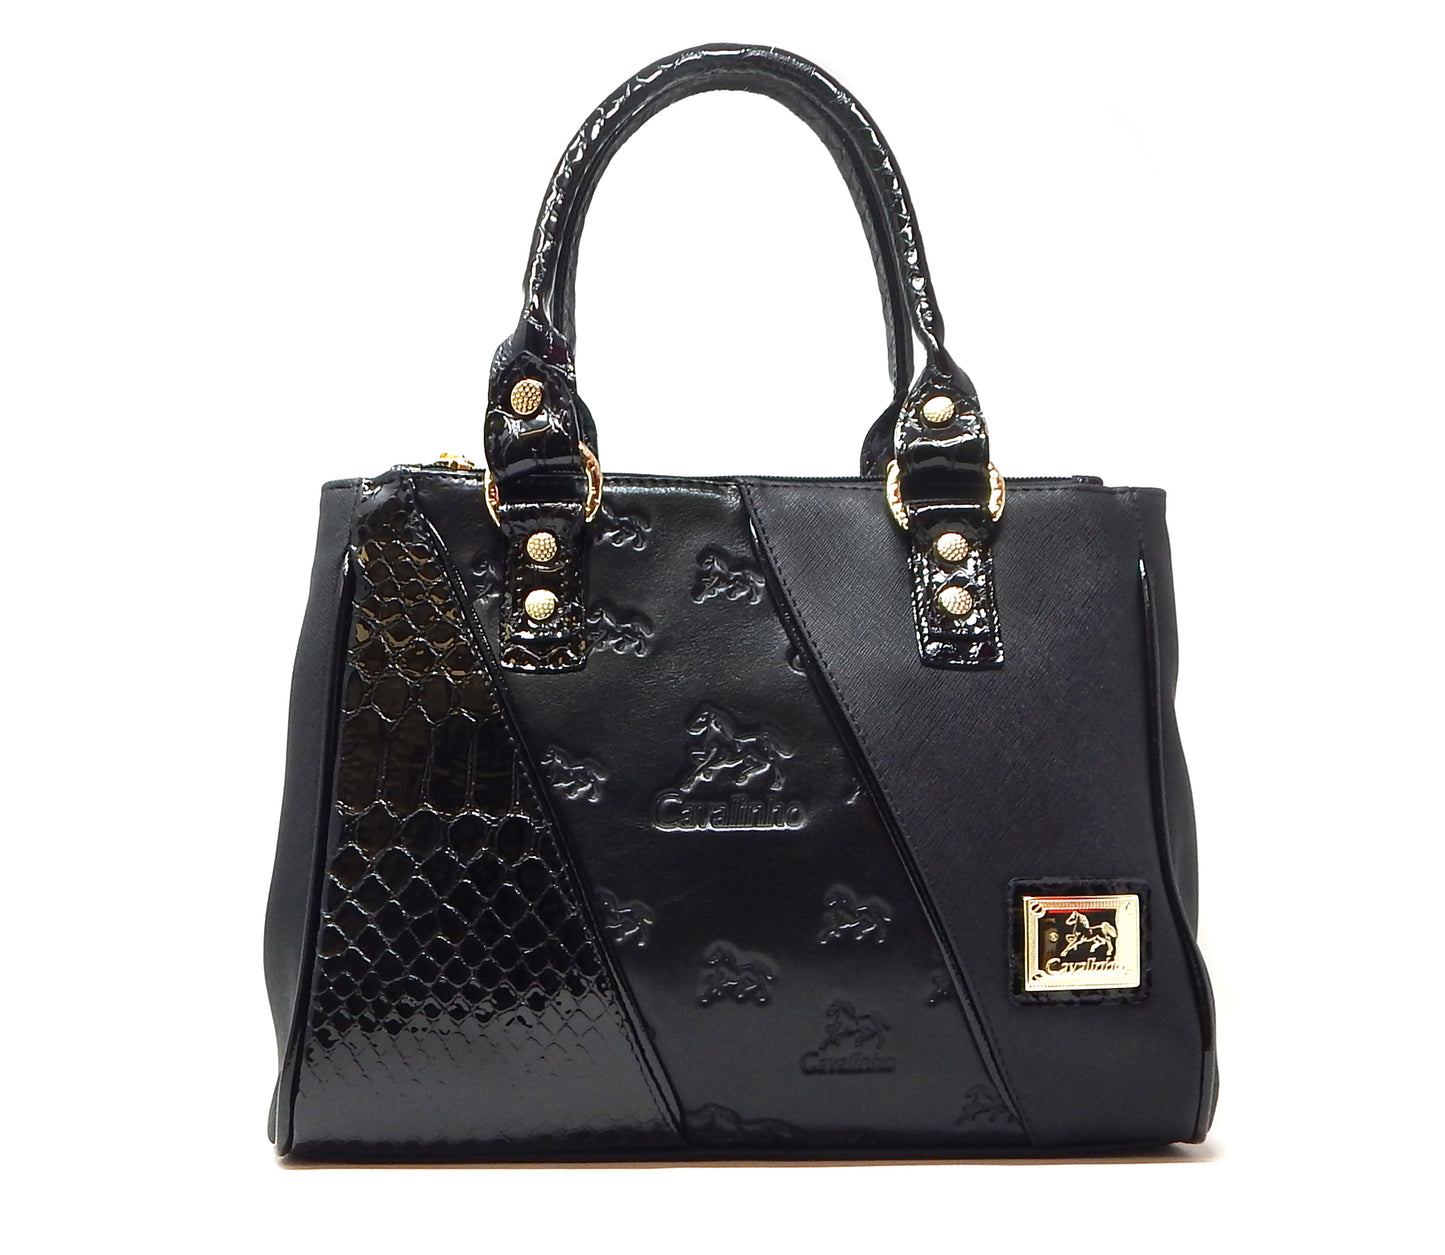 Cavalinho Horse Handbag - Black - 18500506.01.99_1